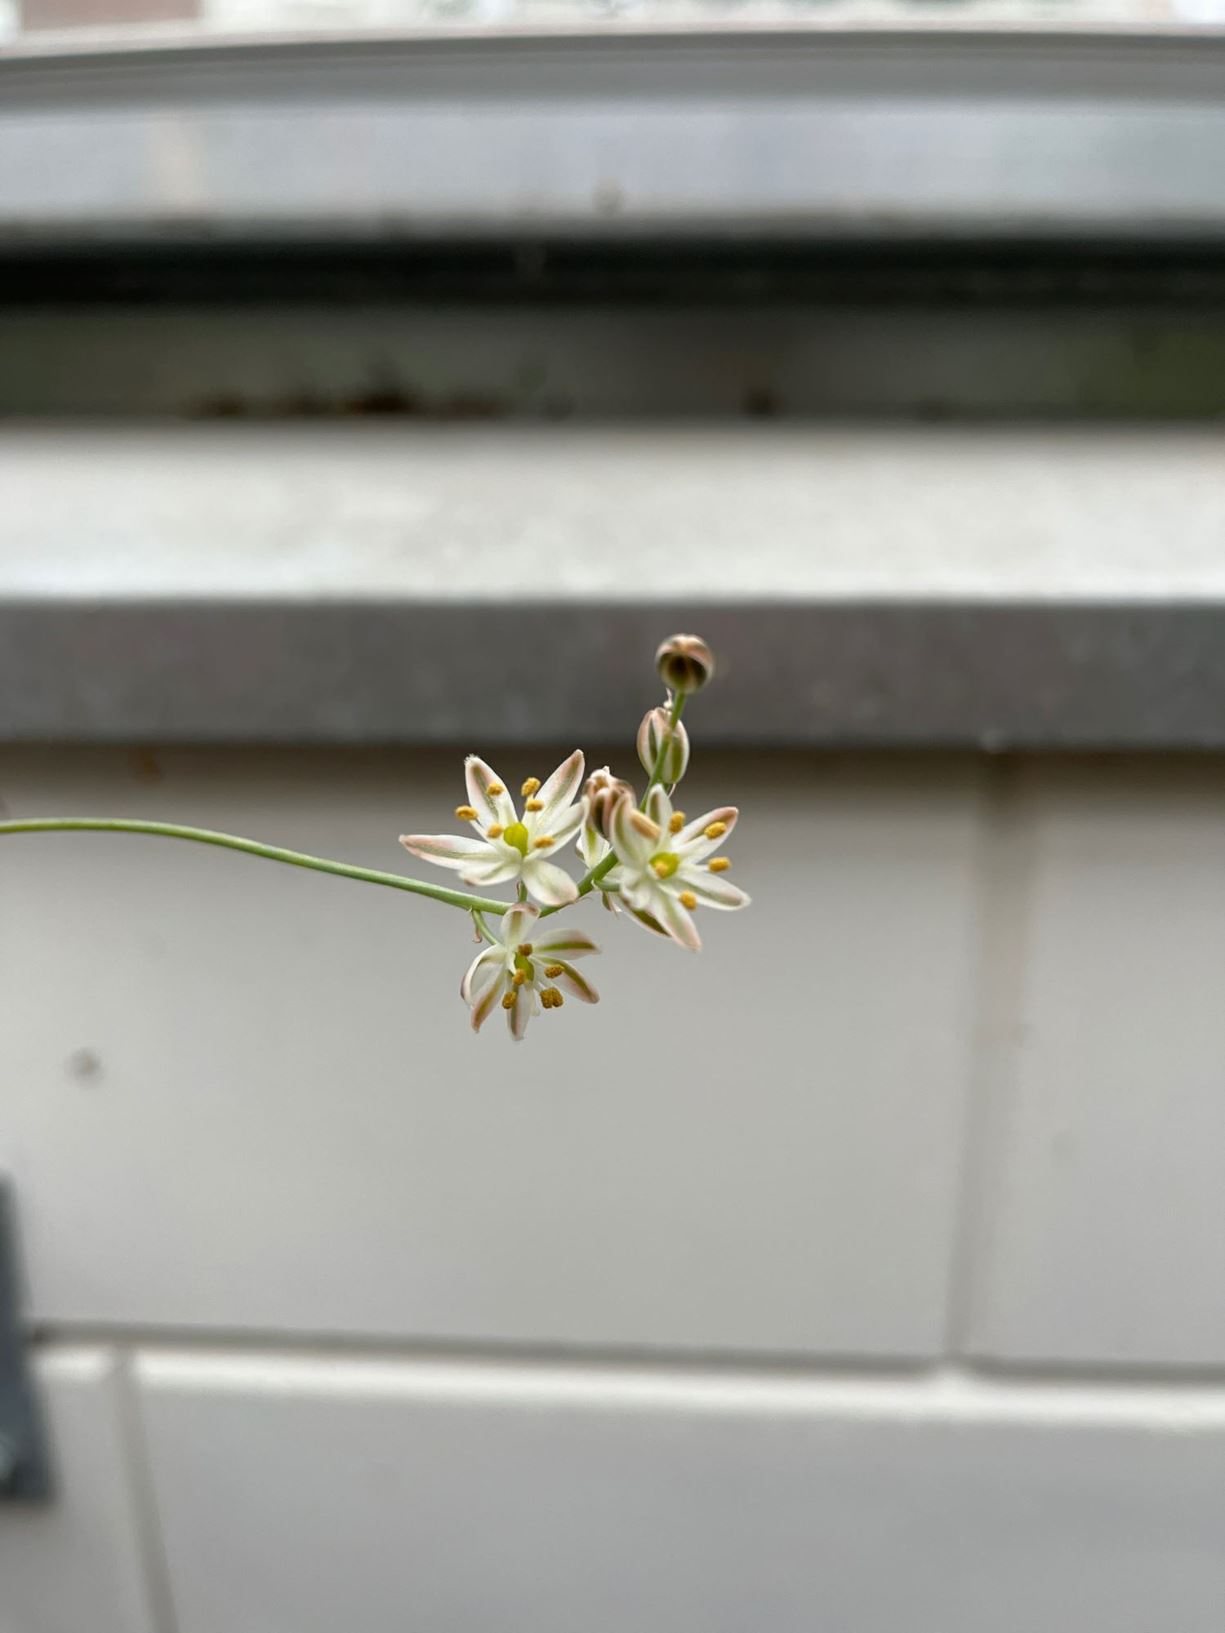 Ornithogalum juncifolium